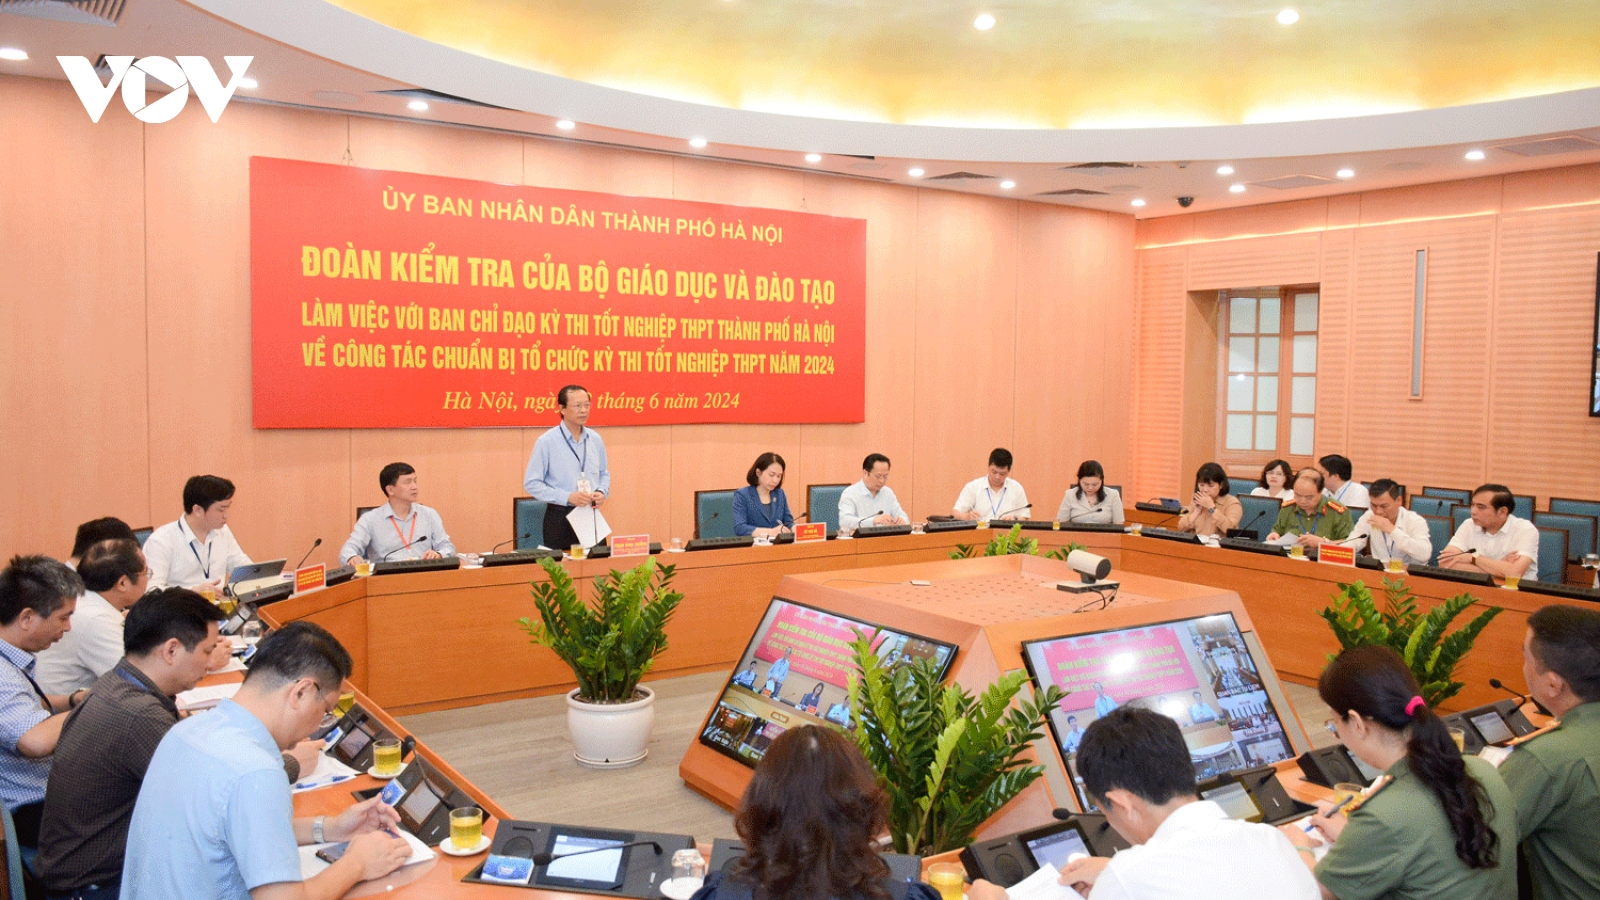 Bộ Giáo dục và Đào tạo kiểm tra chuẩn bị thi tốt nghiệp tại Hà Nội